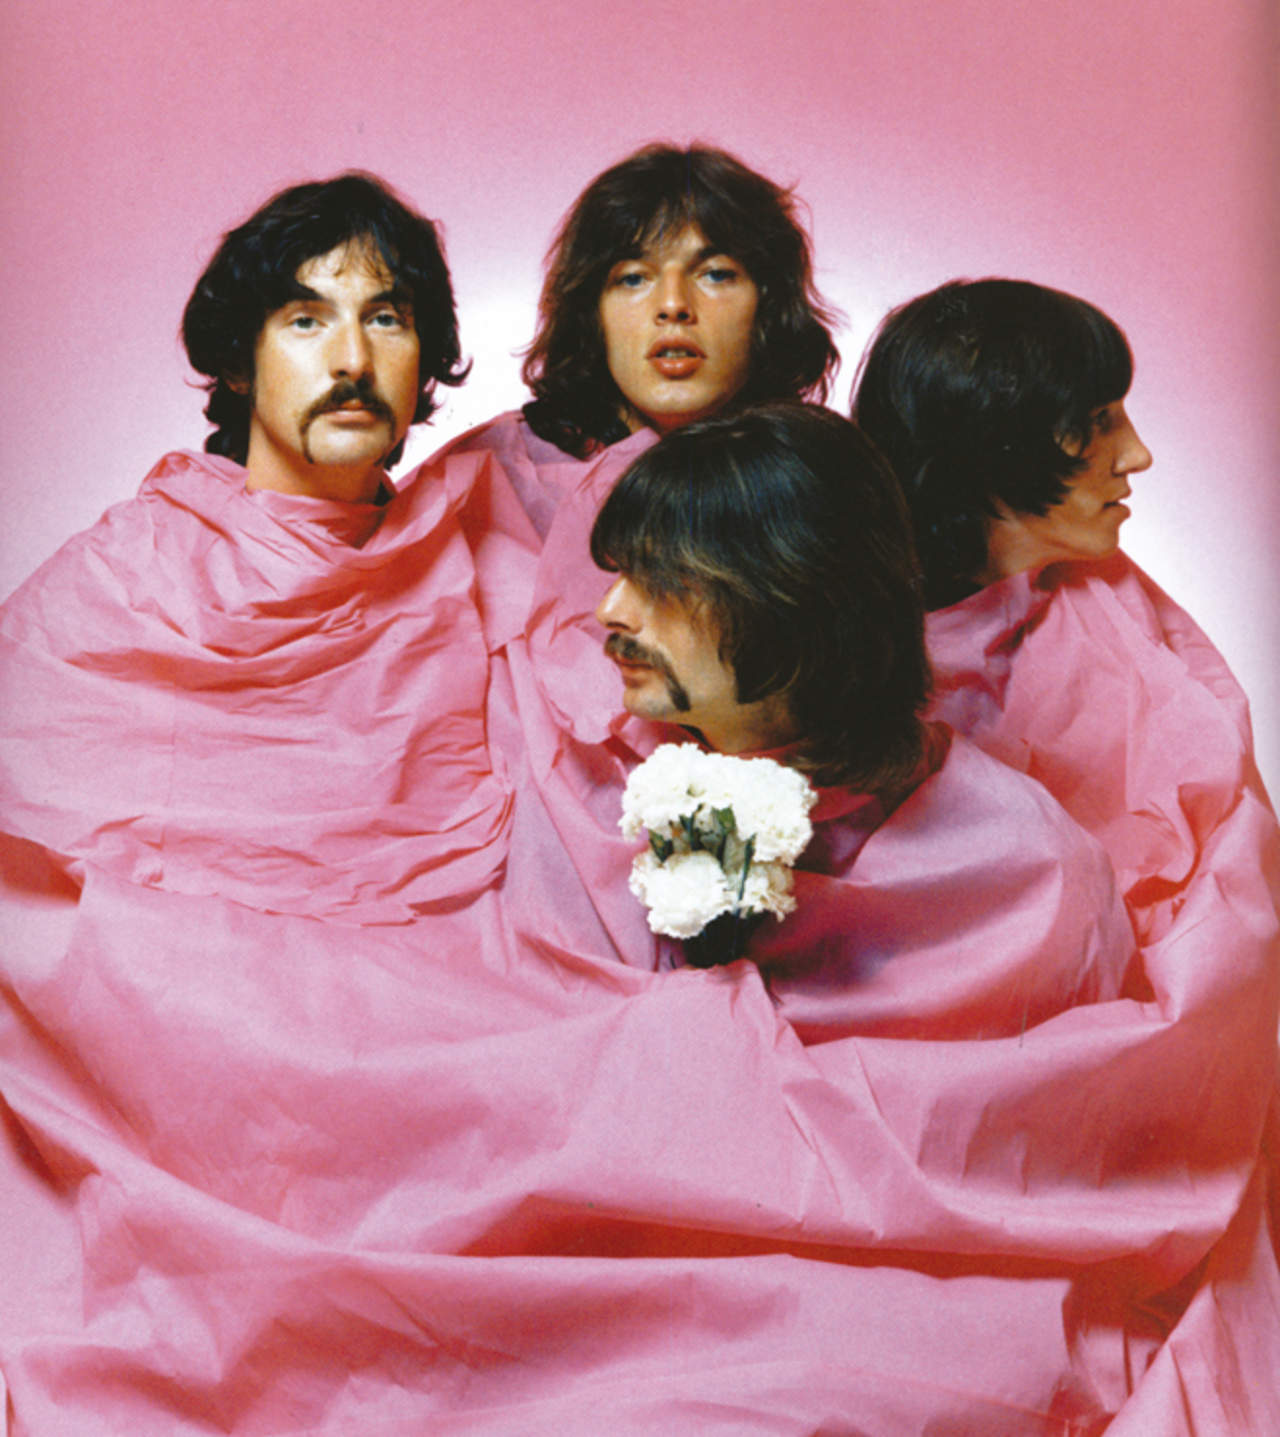 Publicidad de Pink Floyd a finales de los sesenta. Foto: Martin Kennedy Tumblr